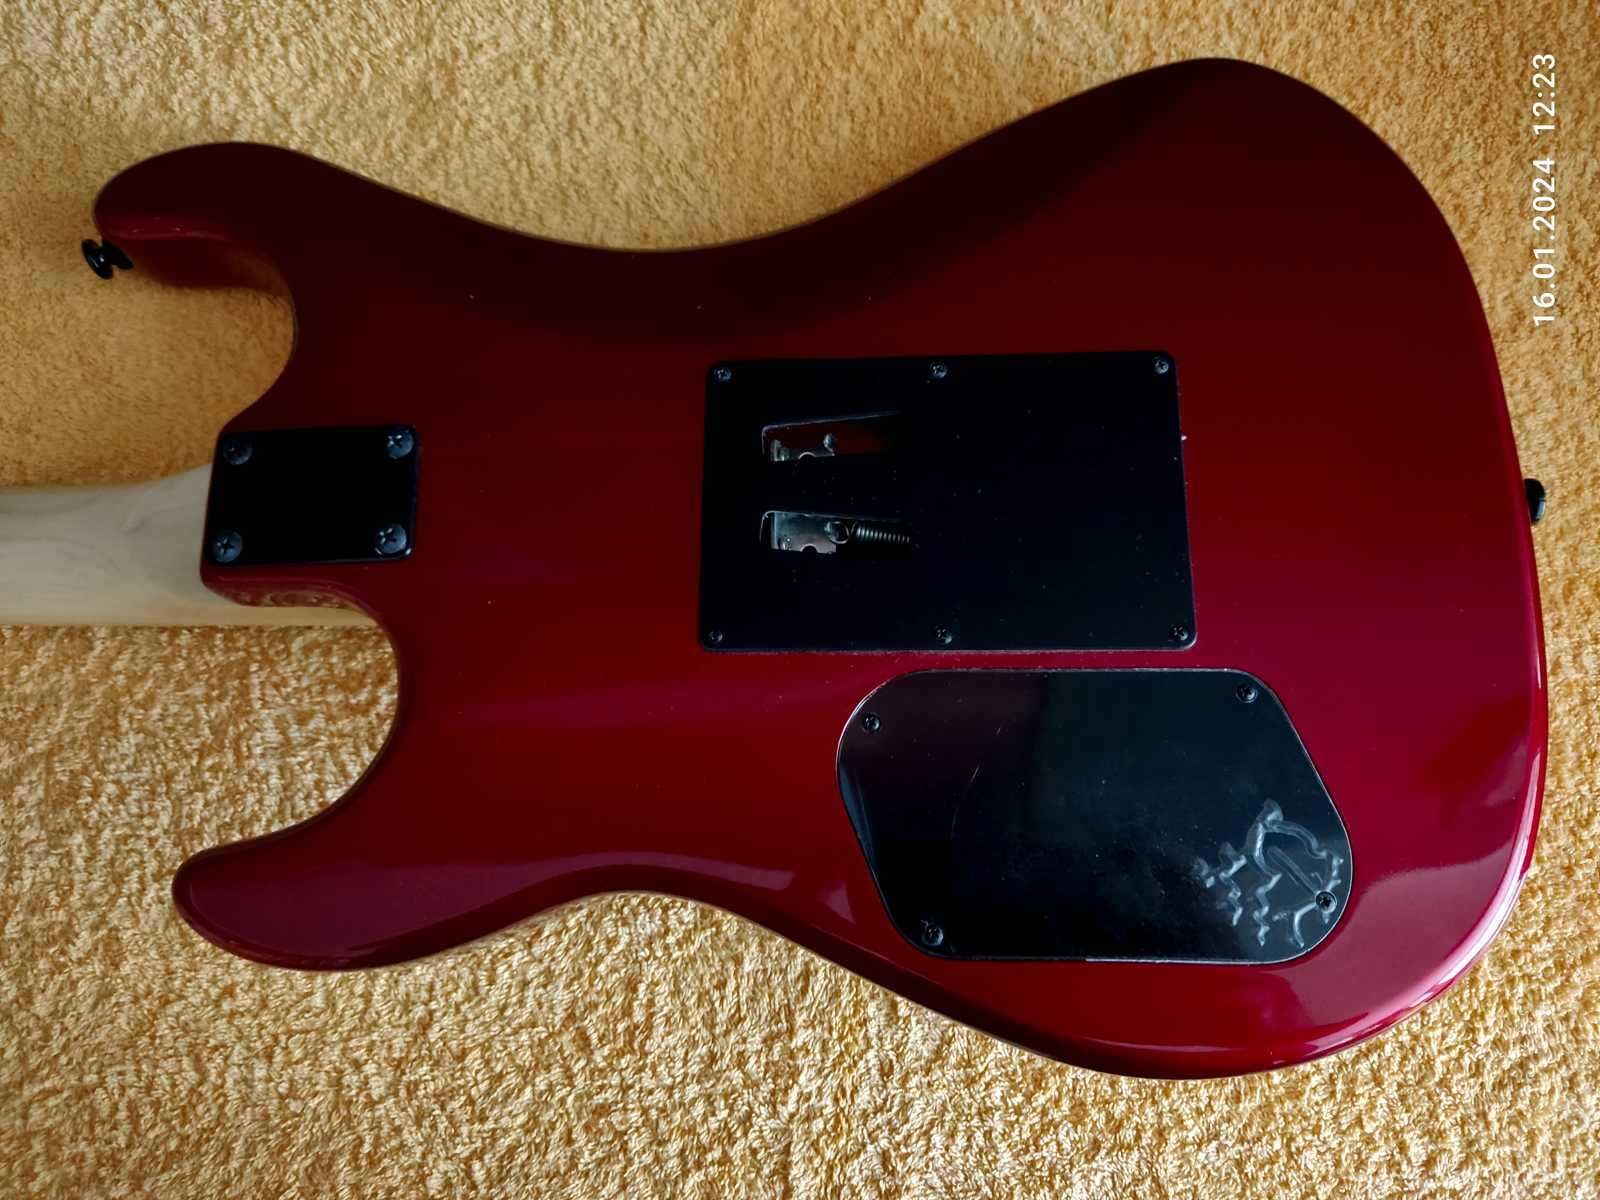 Gitara Kramer Pacer Classic Scarlet Red Metallic